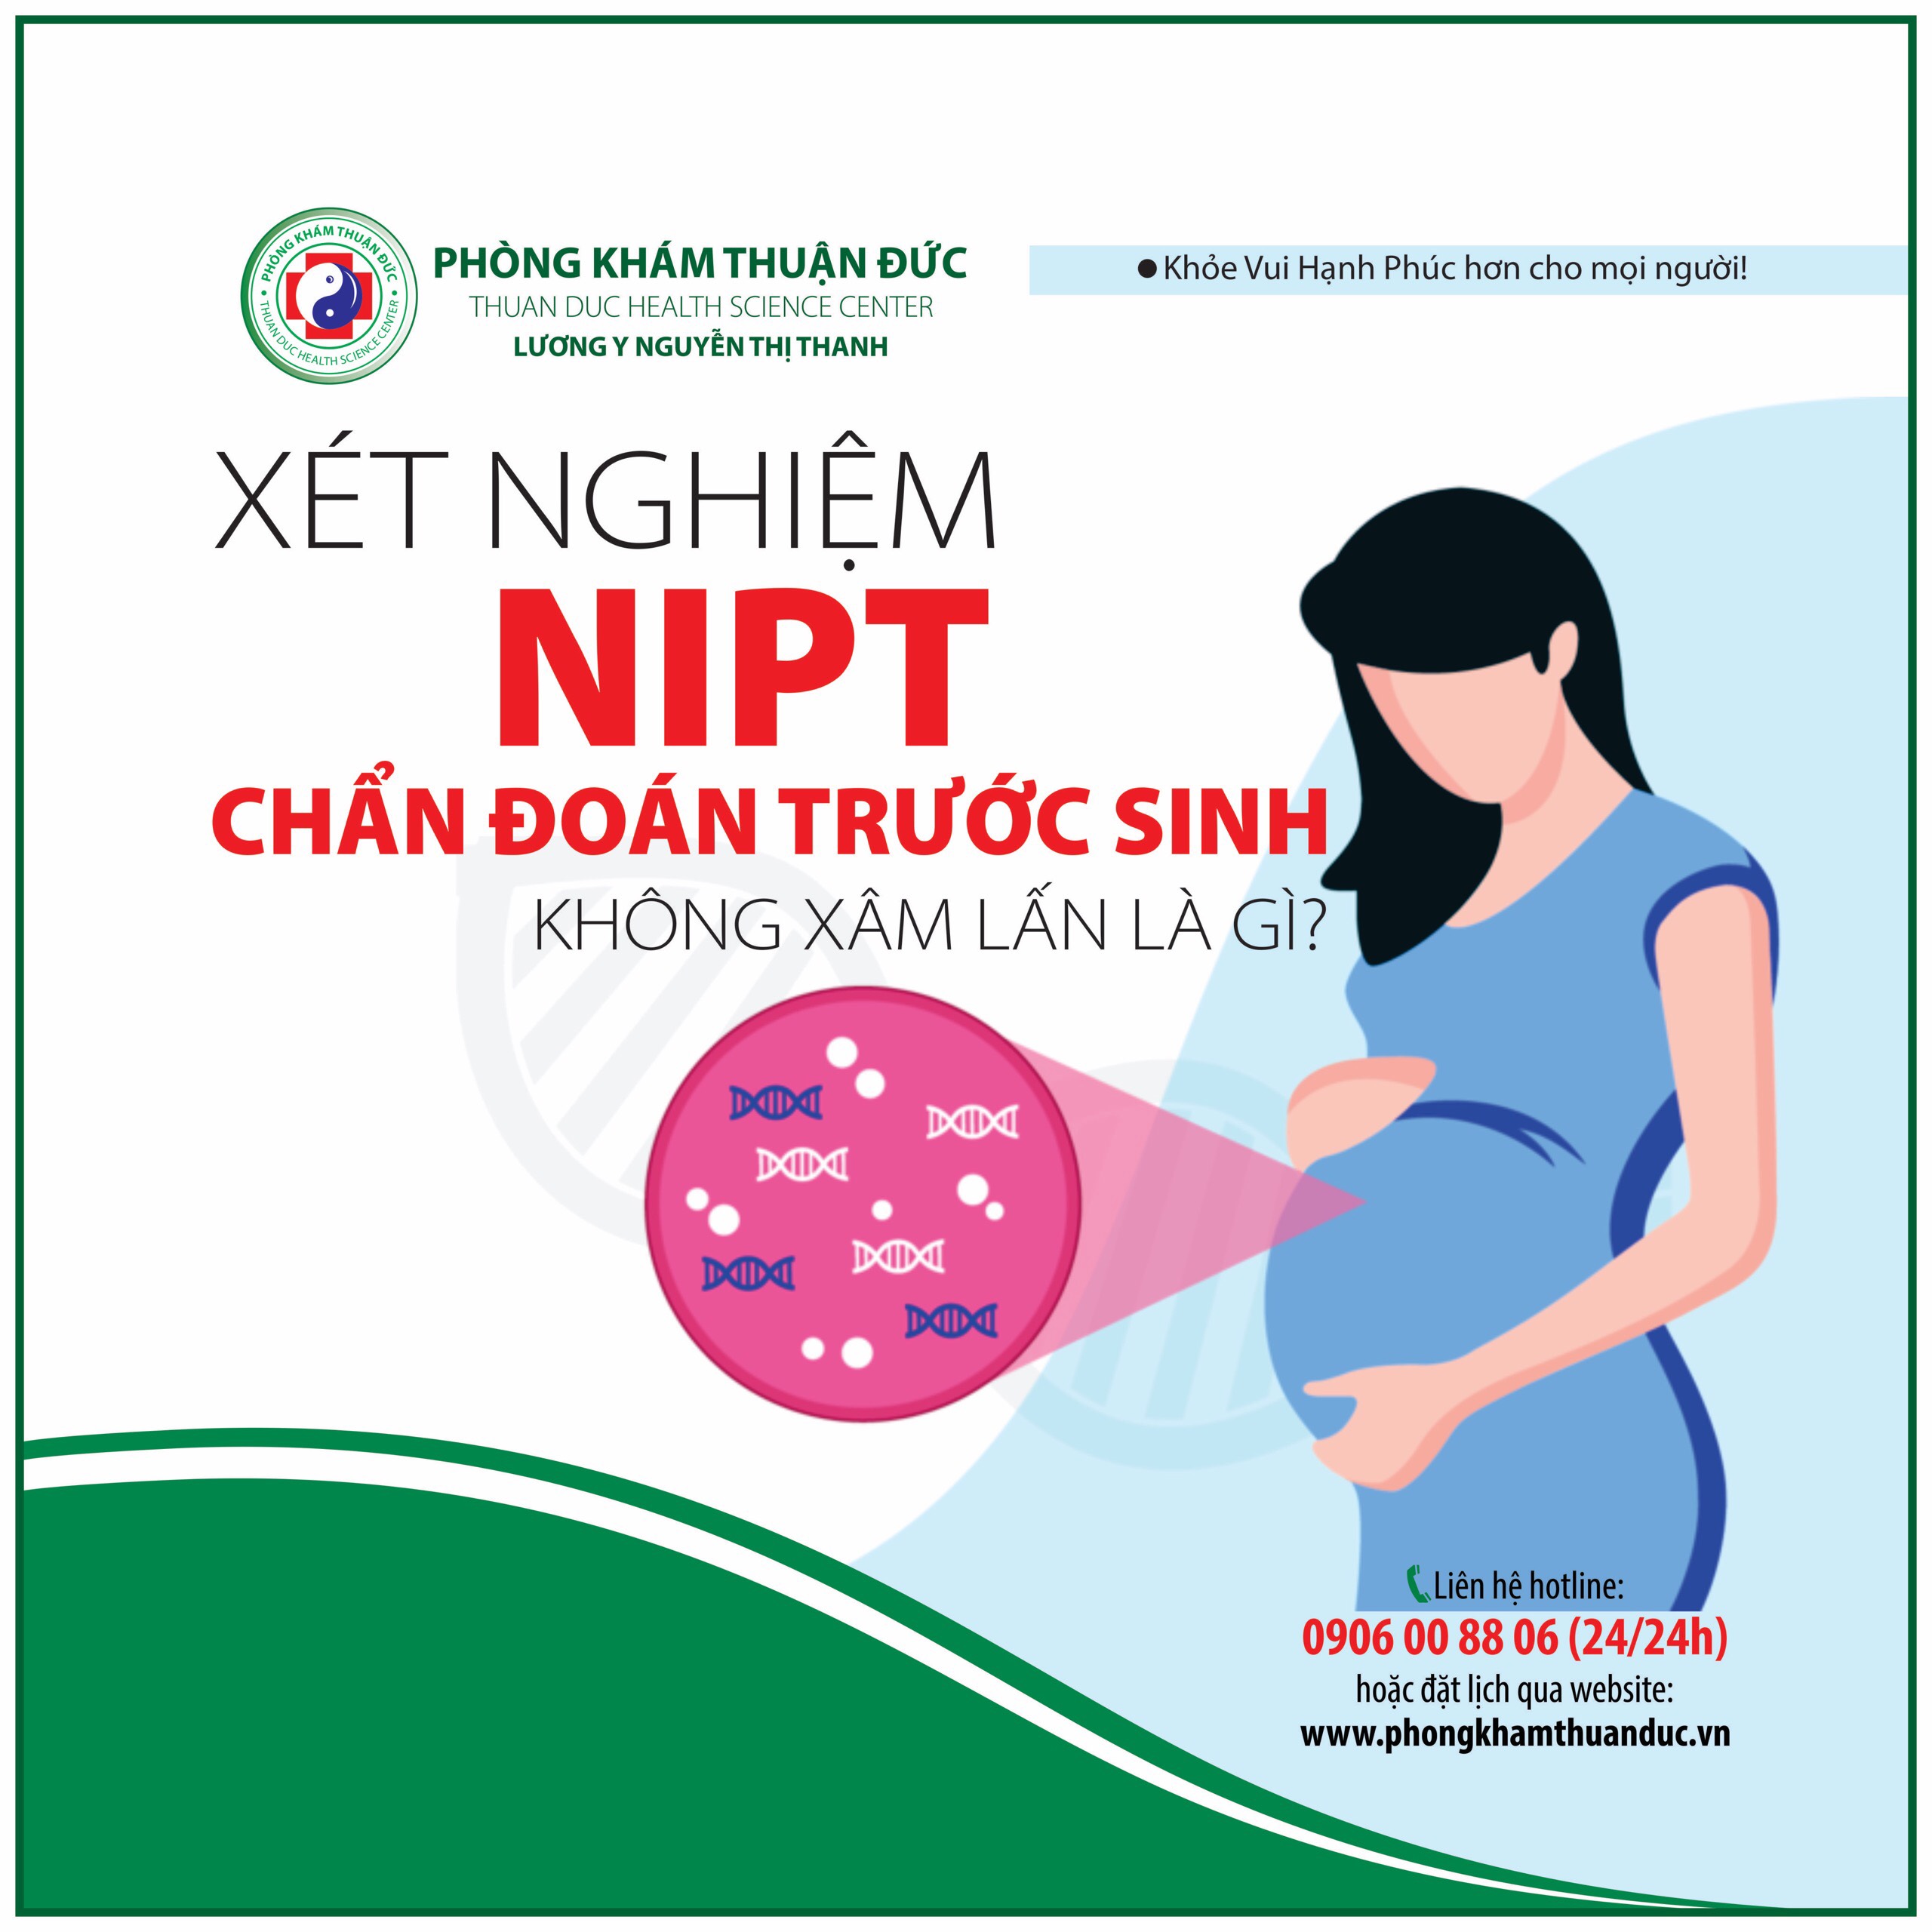 Xét nghiệm NIPT chẩn đoán trước sinh không xâm lấn là gì?